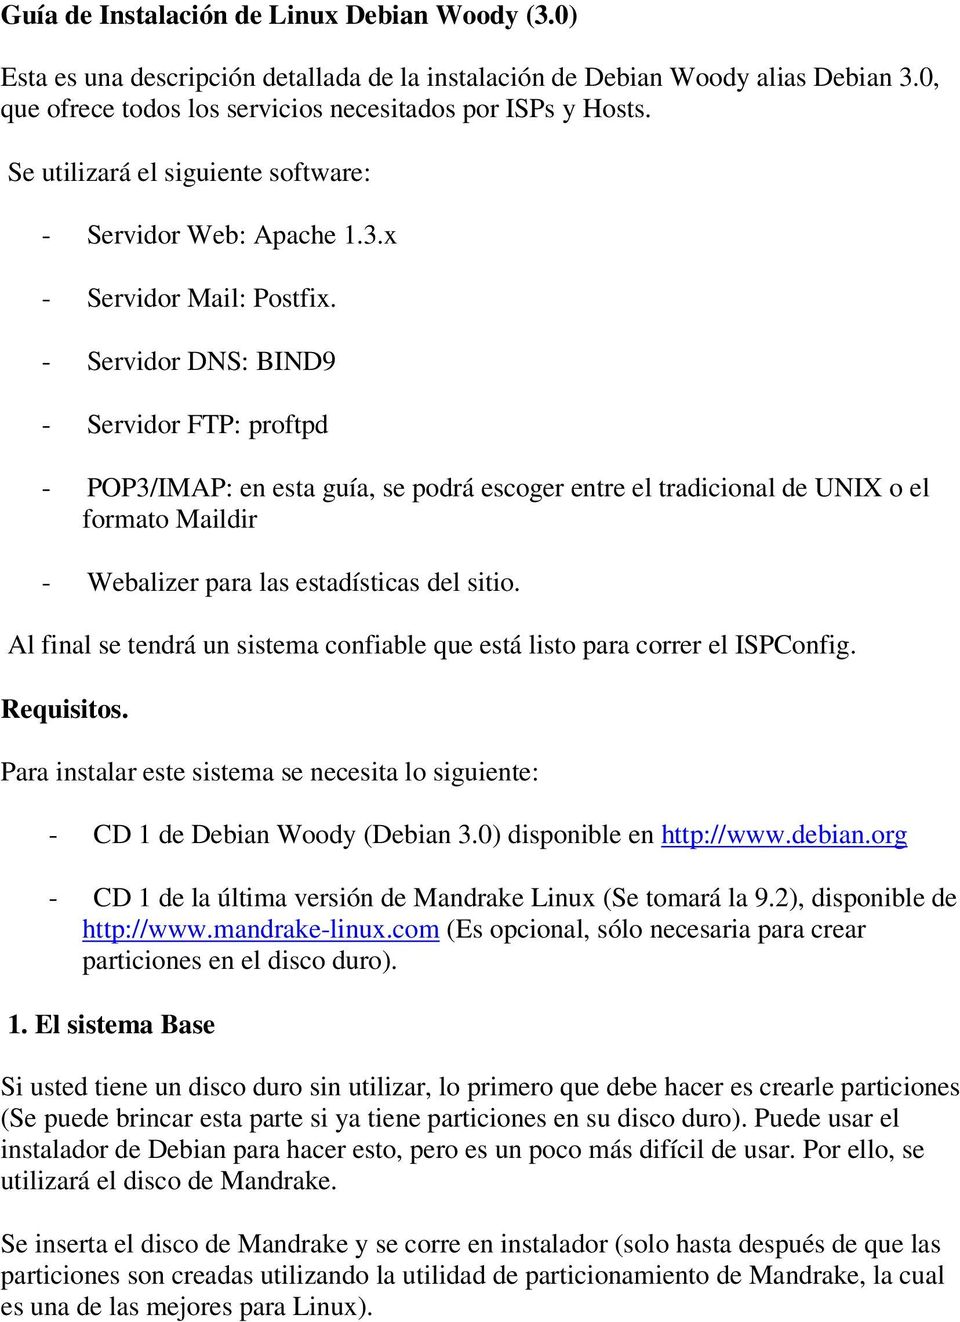 - Servidor DNS: BIND9 - Servidor FTP: proftpd - POP3/IMAP: en esta guía, se podrá escoger entre el tradicional de UNIX o el formato Maildir - Webalizer para las estadísticas del sitio.